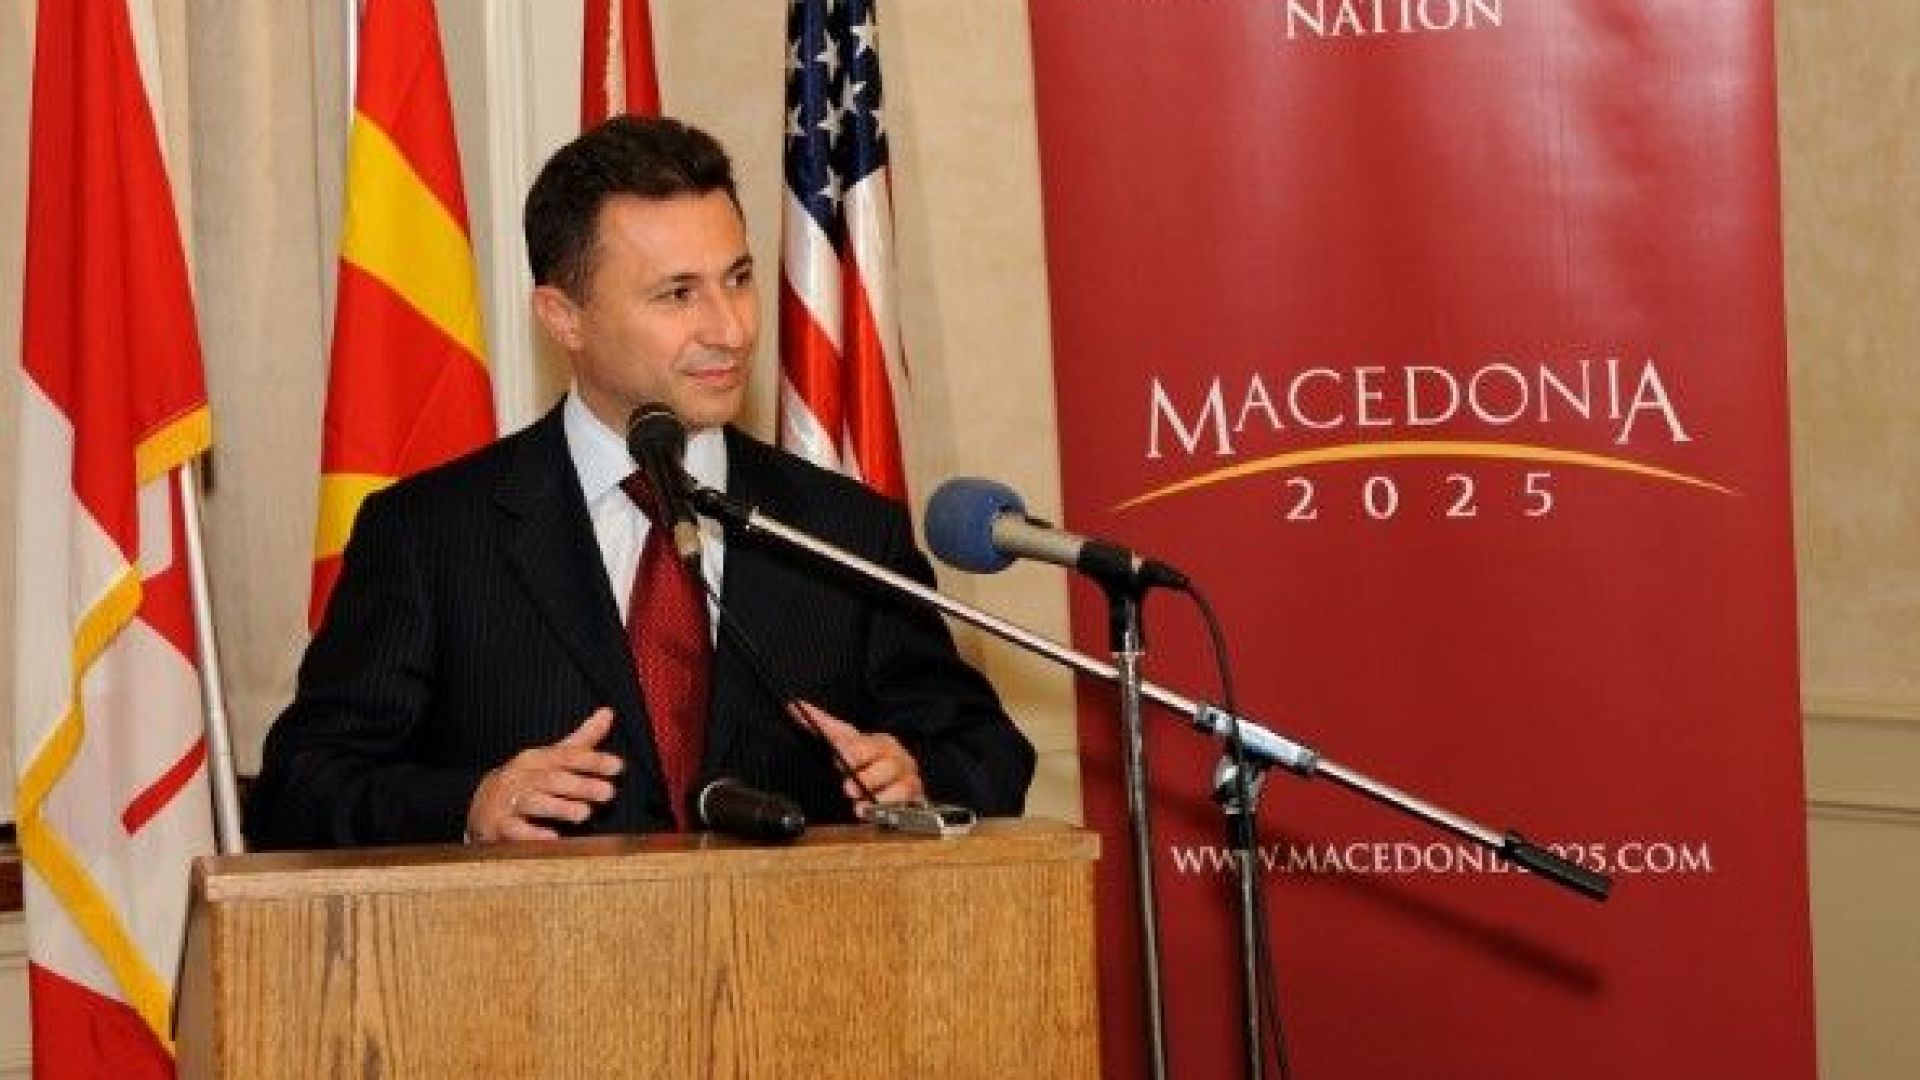 Бившият македонски премиер Никола Груевски е подал молба за убежище